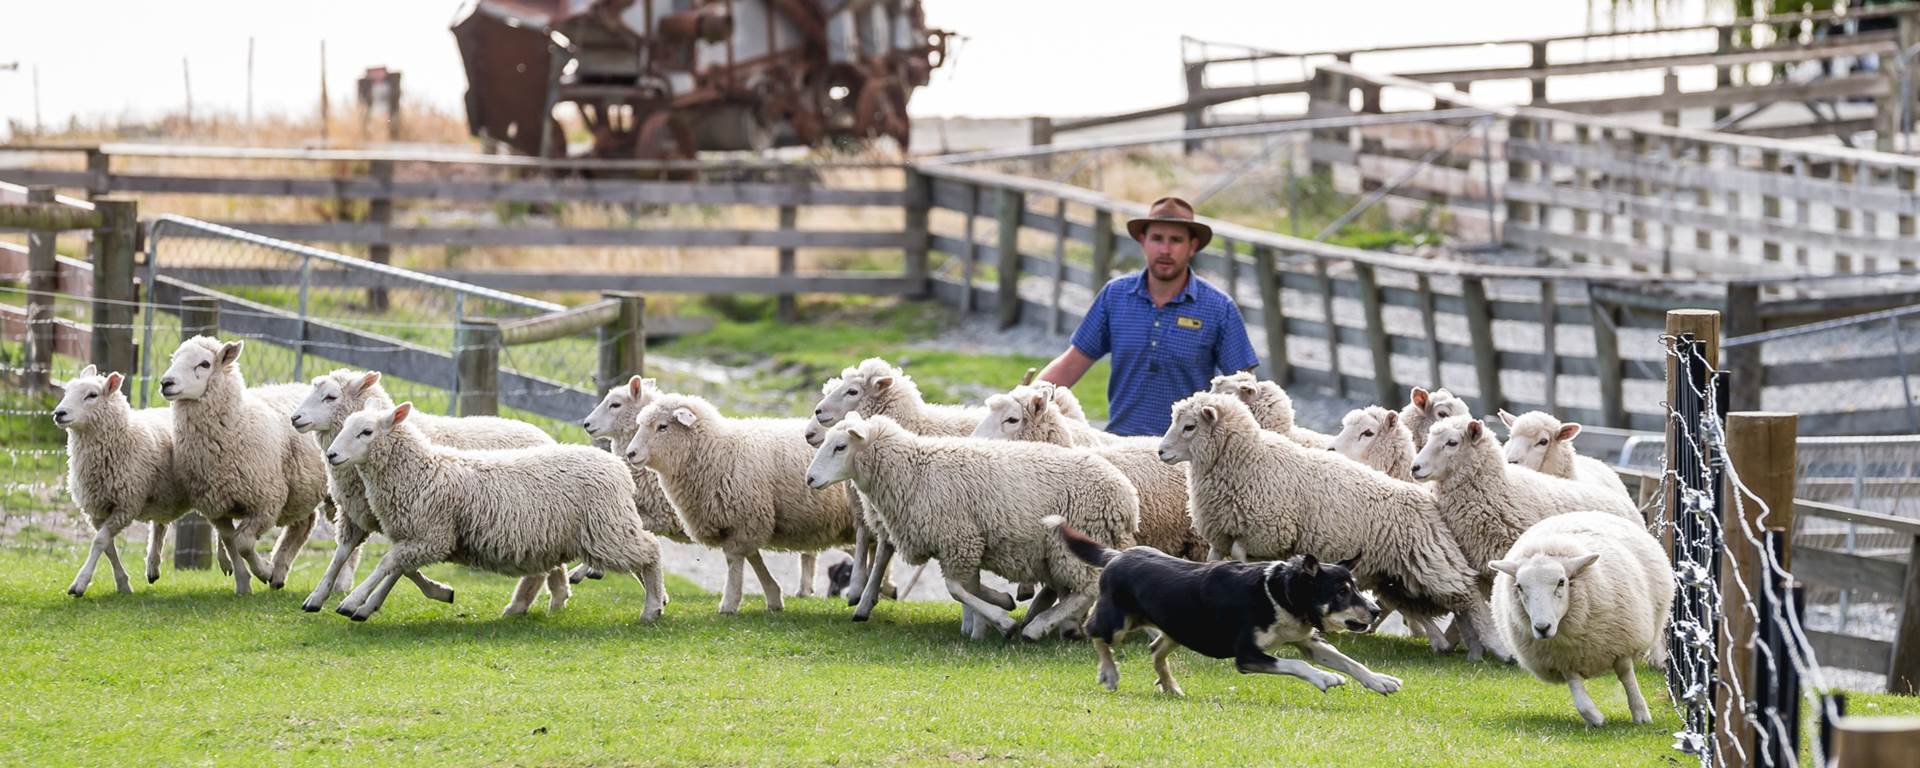 Откорм ягнят. Овцеводство в Австралии. Ферма овец. Овцеводческая ферма. Бараны на ферме.